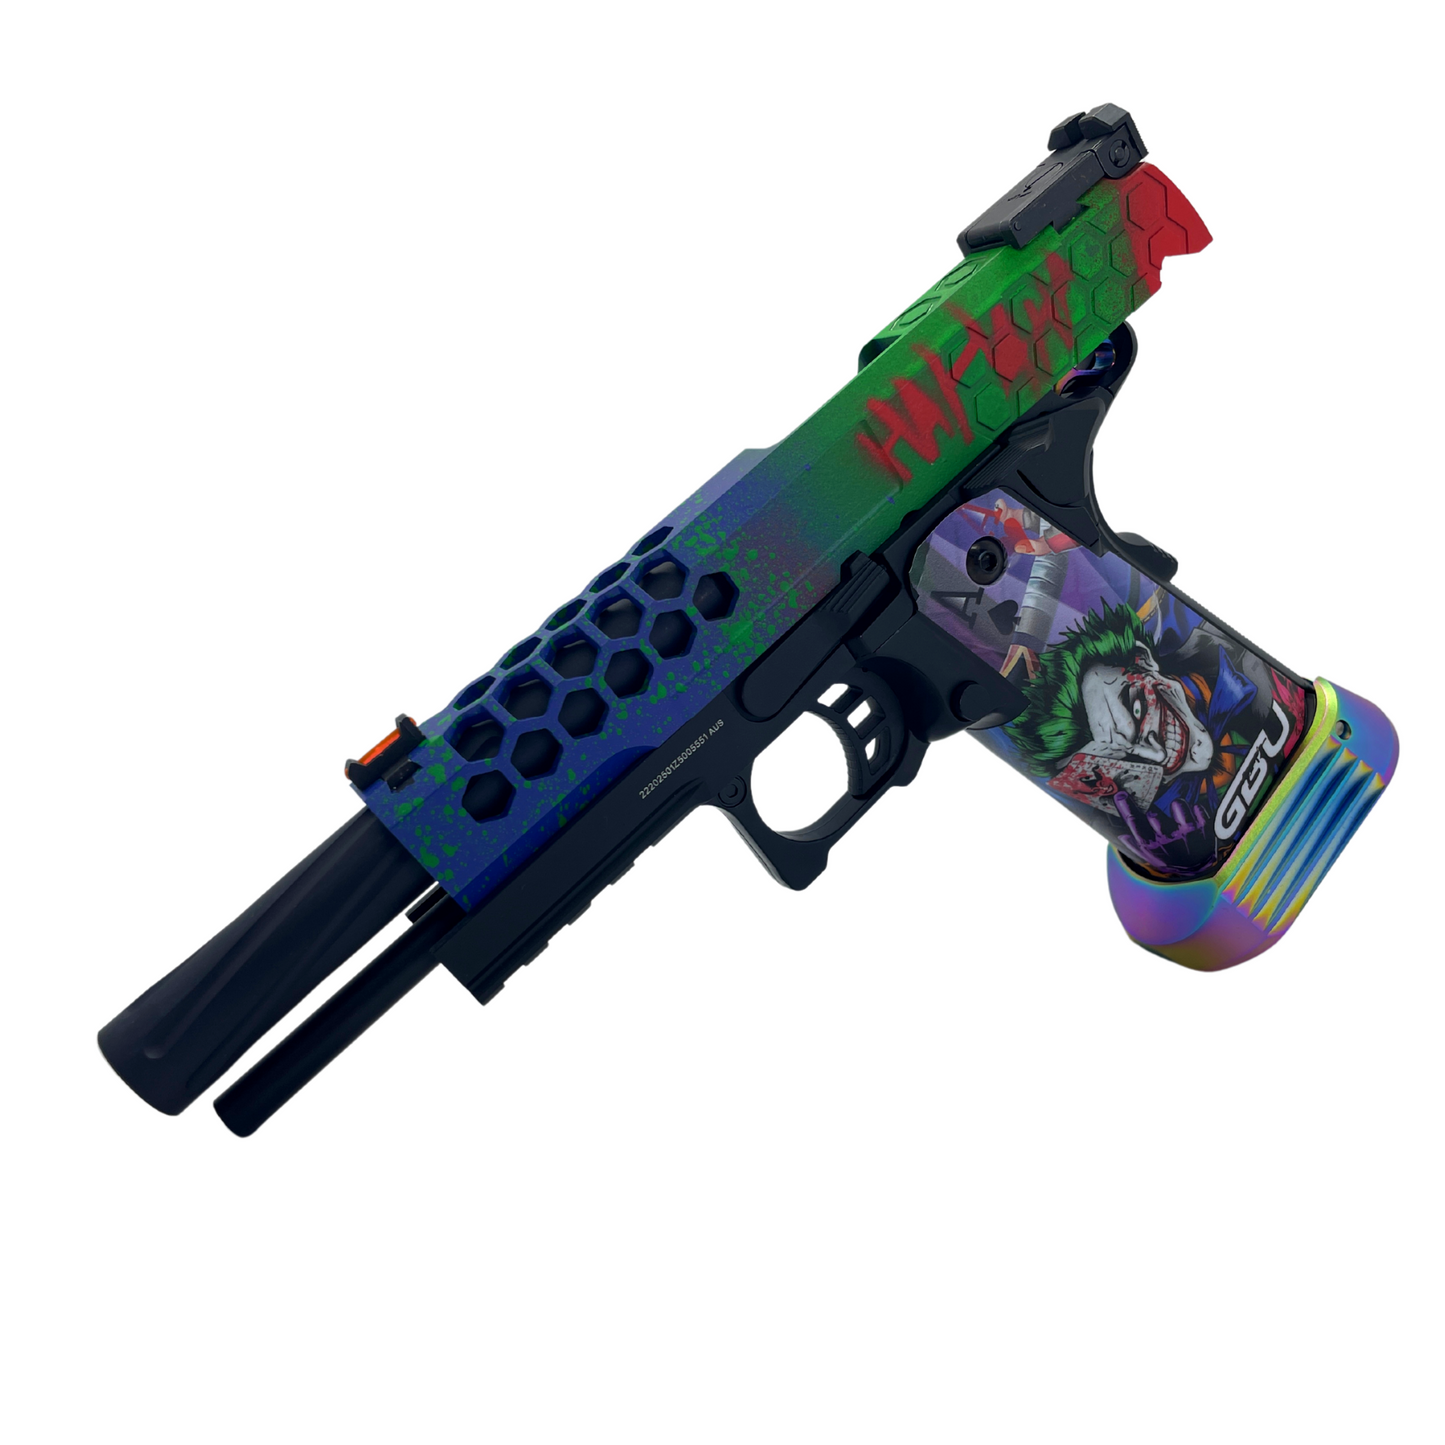 "Joker" Custom G/E Hi-Capa Gas Pistol - Gel Blaster